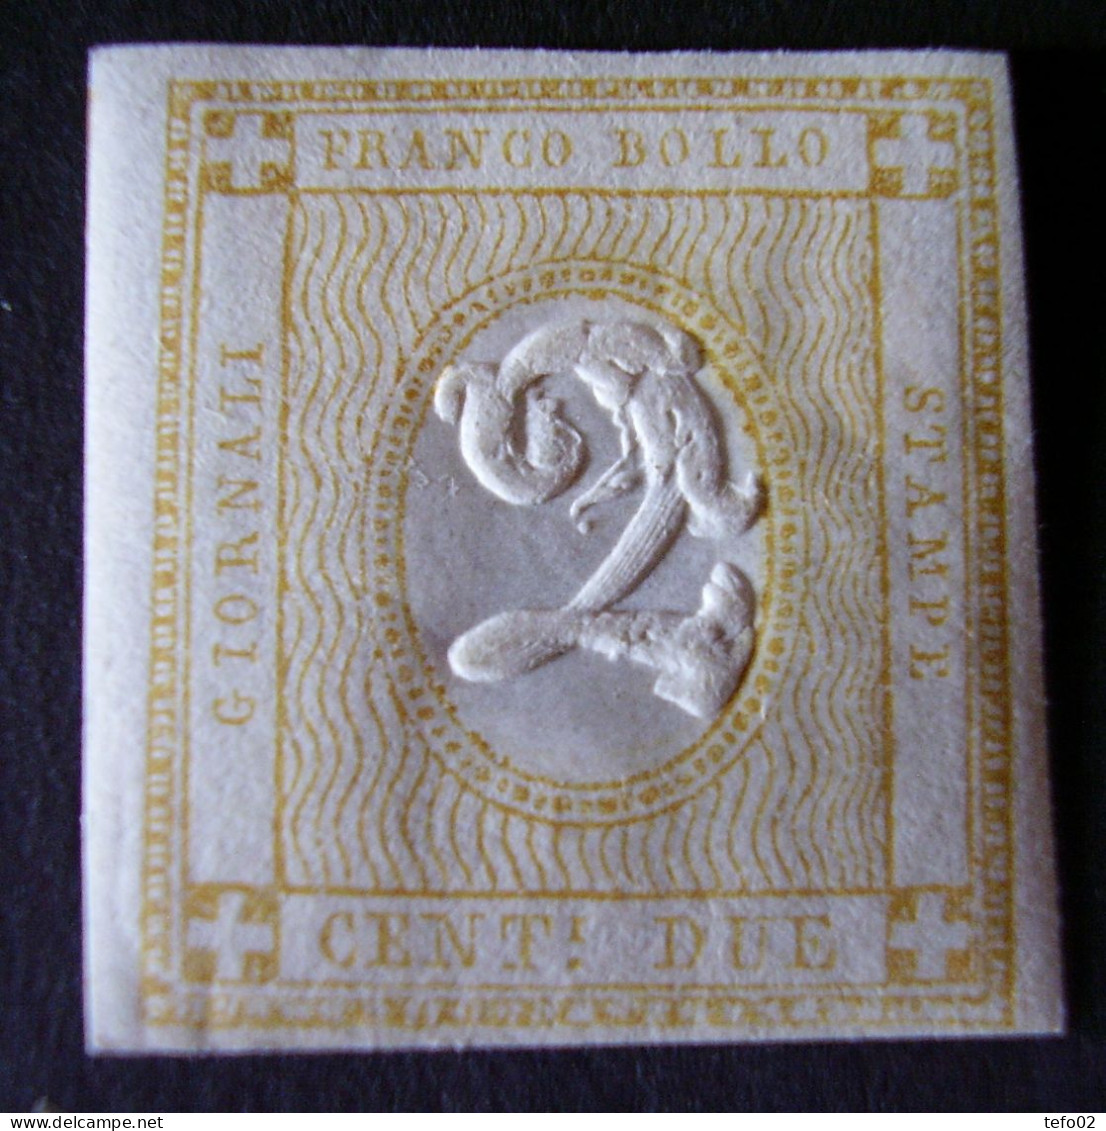 Regno V.E. II. Interessantissimo insieme di francobolli nuovi ed usati, anche con varietà INEDITE